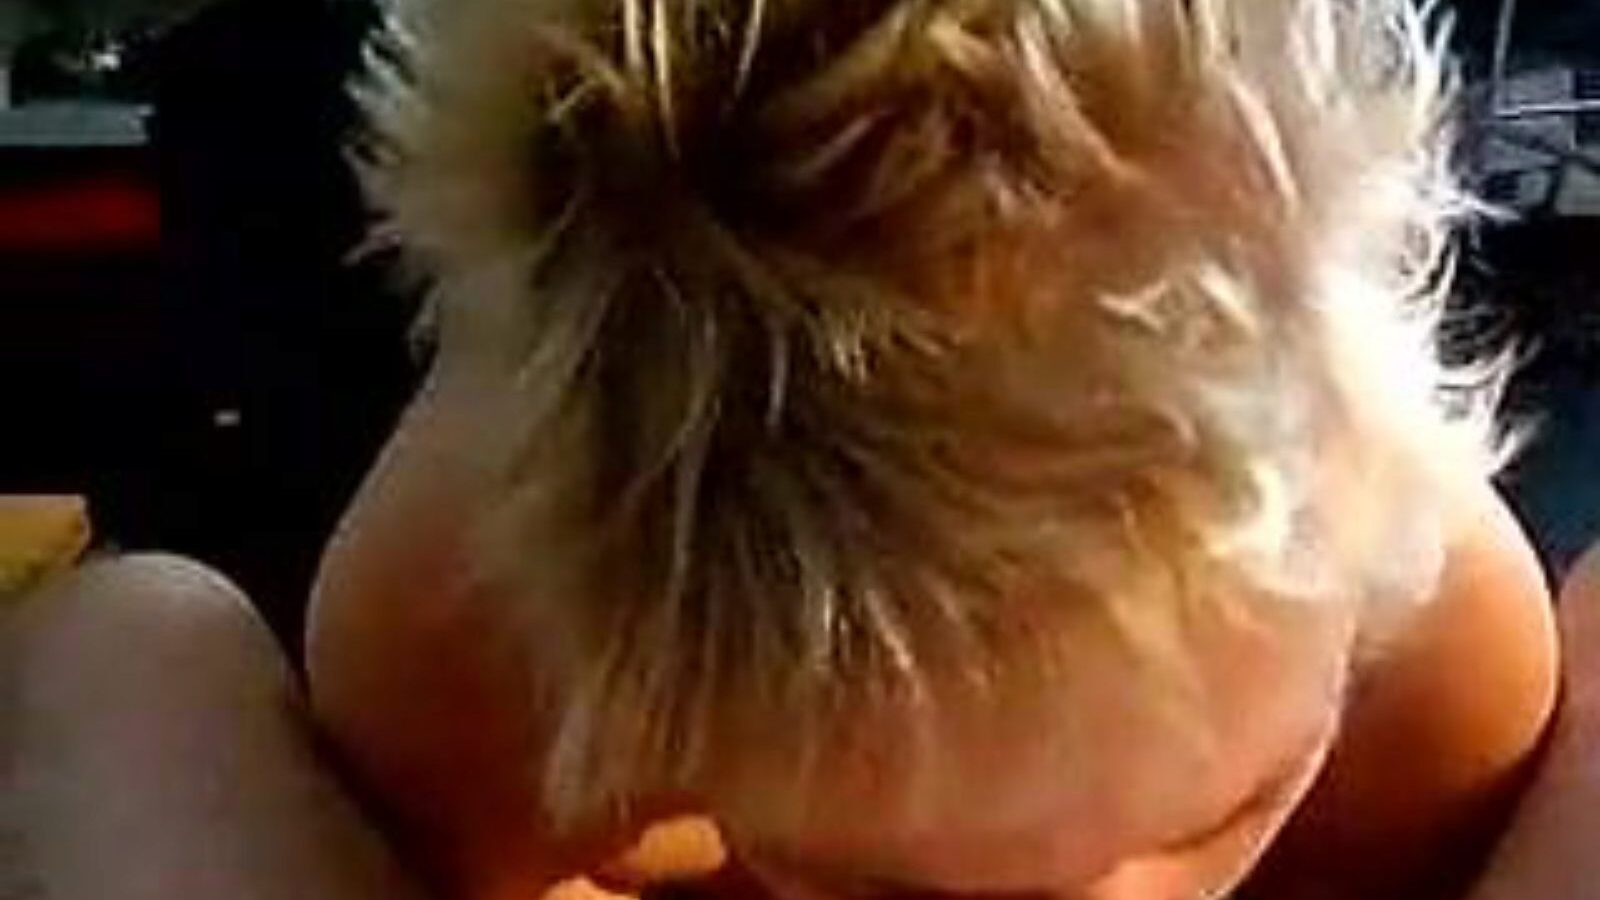 leuke dame: vídeo pornô caseiro e velha para garotas a6 - xhamster assista o filme de leuke dame tube fuckfest de graça no xhamster, com a coleção mais quente de shows de vídeos caseiros holandeses, velha e pornografia sugadora